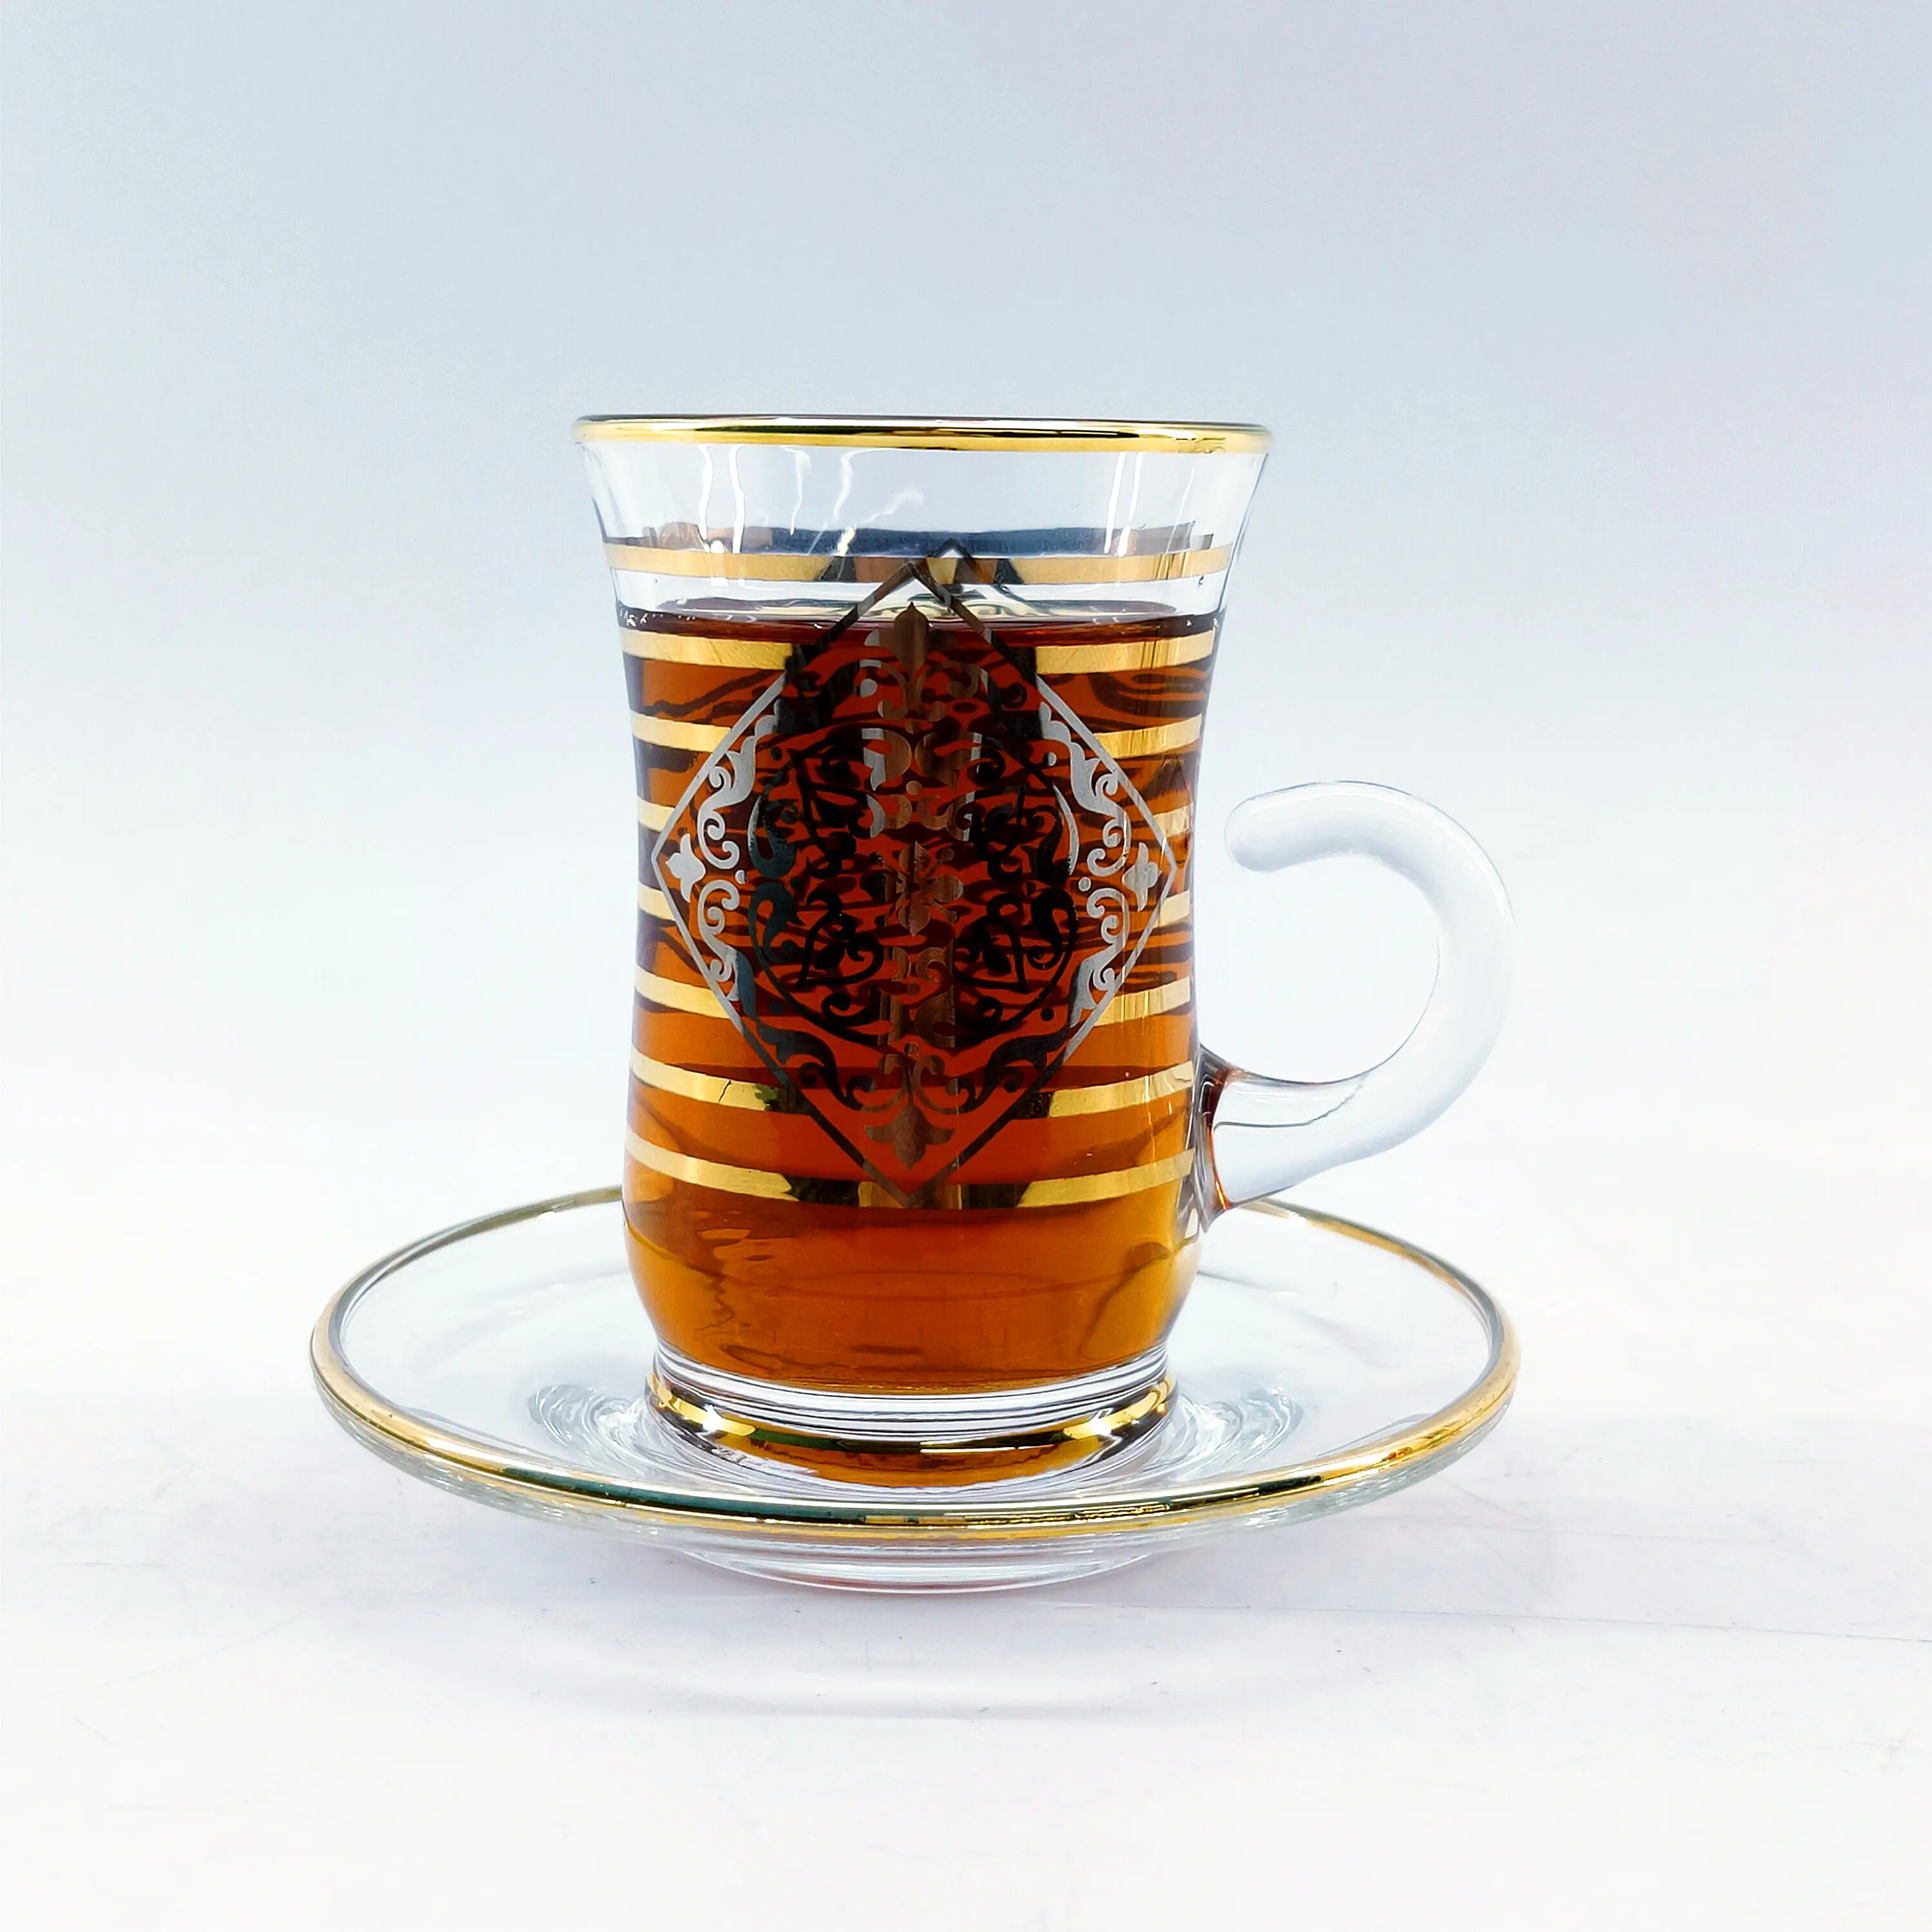 Juego de tazas de cristal y té árabe, productos listos, envío rápido